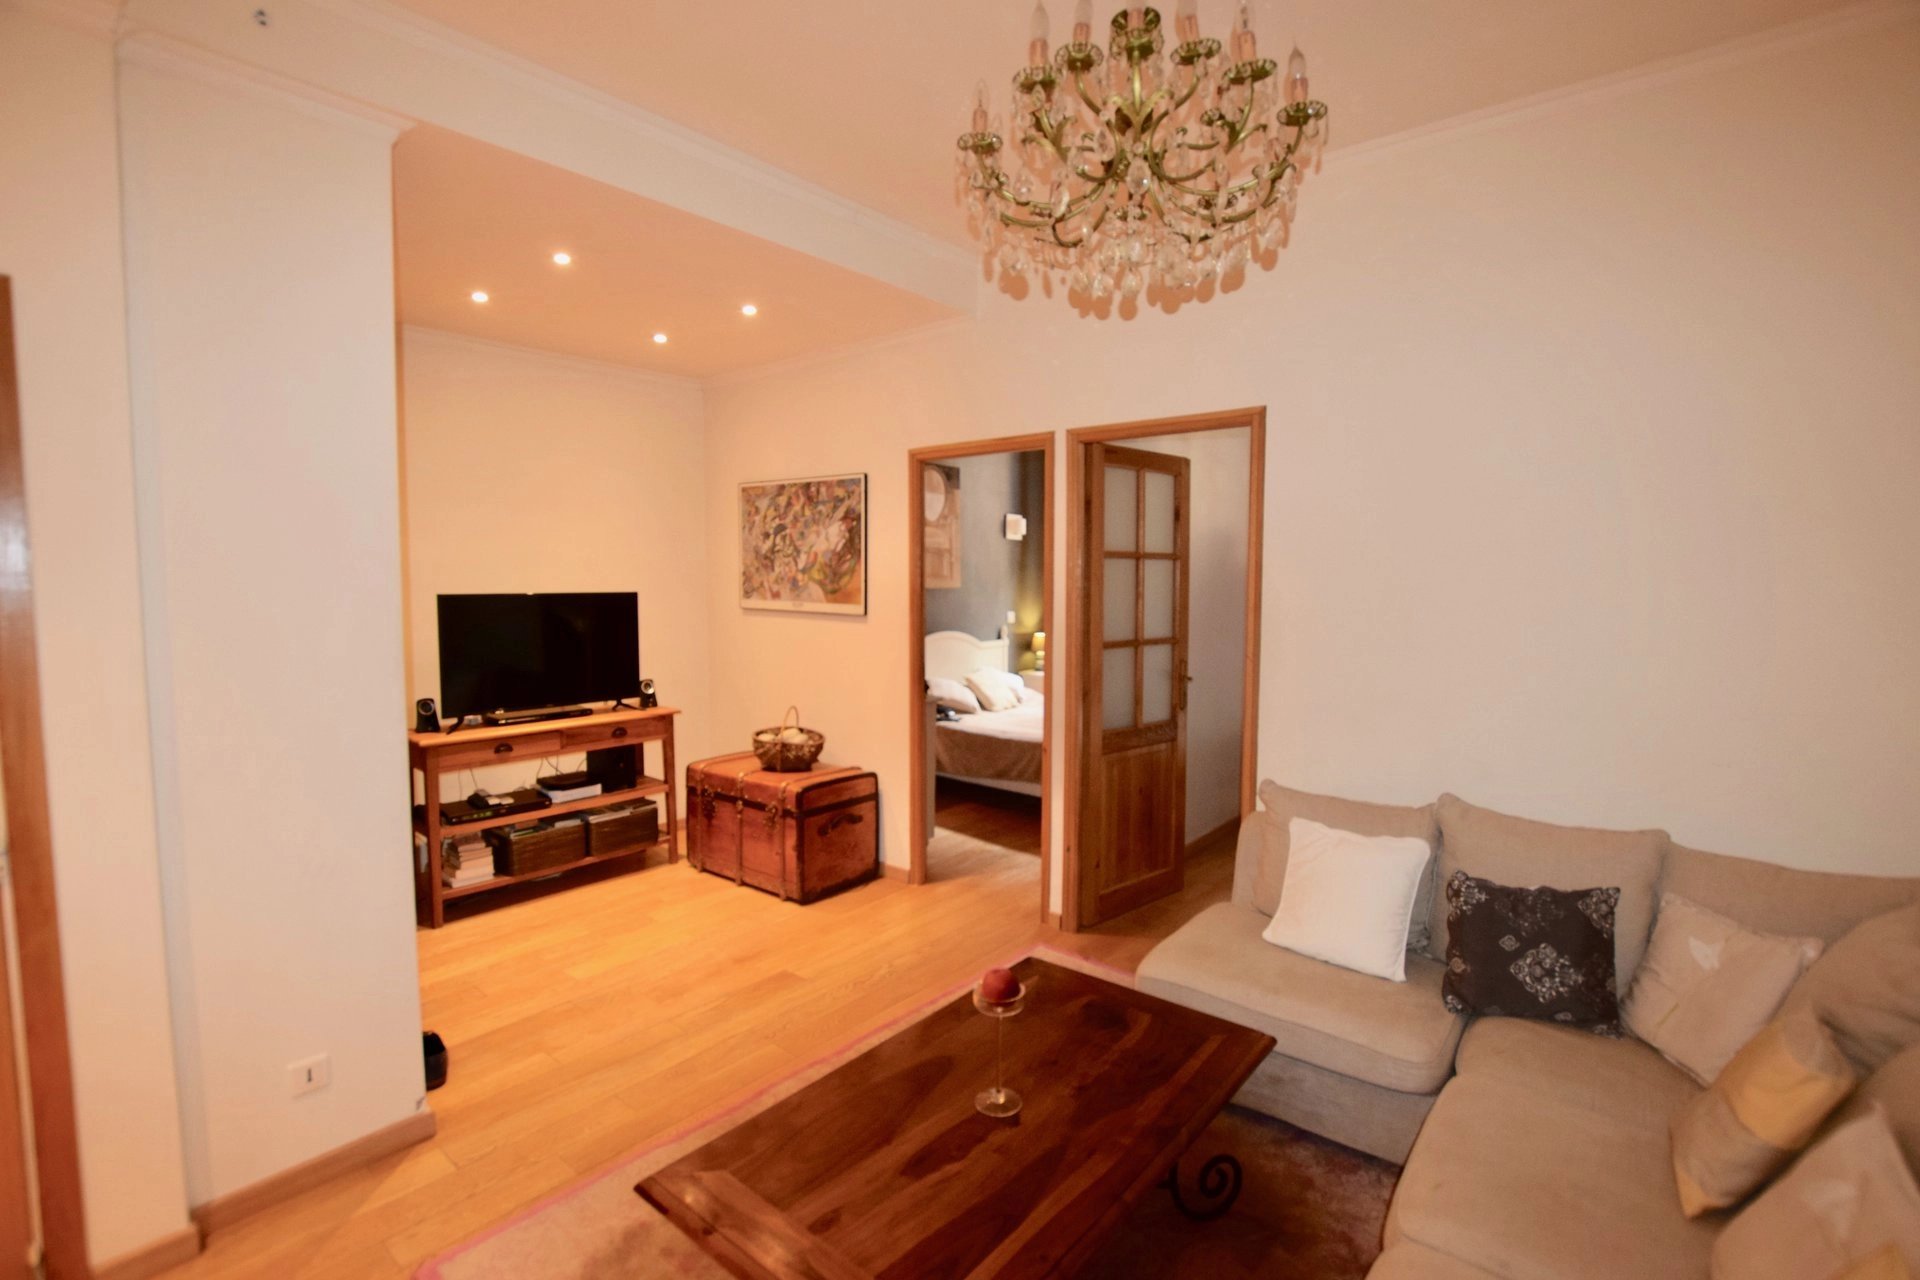 Living-room Chandelier Wooden floor